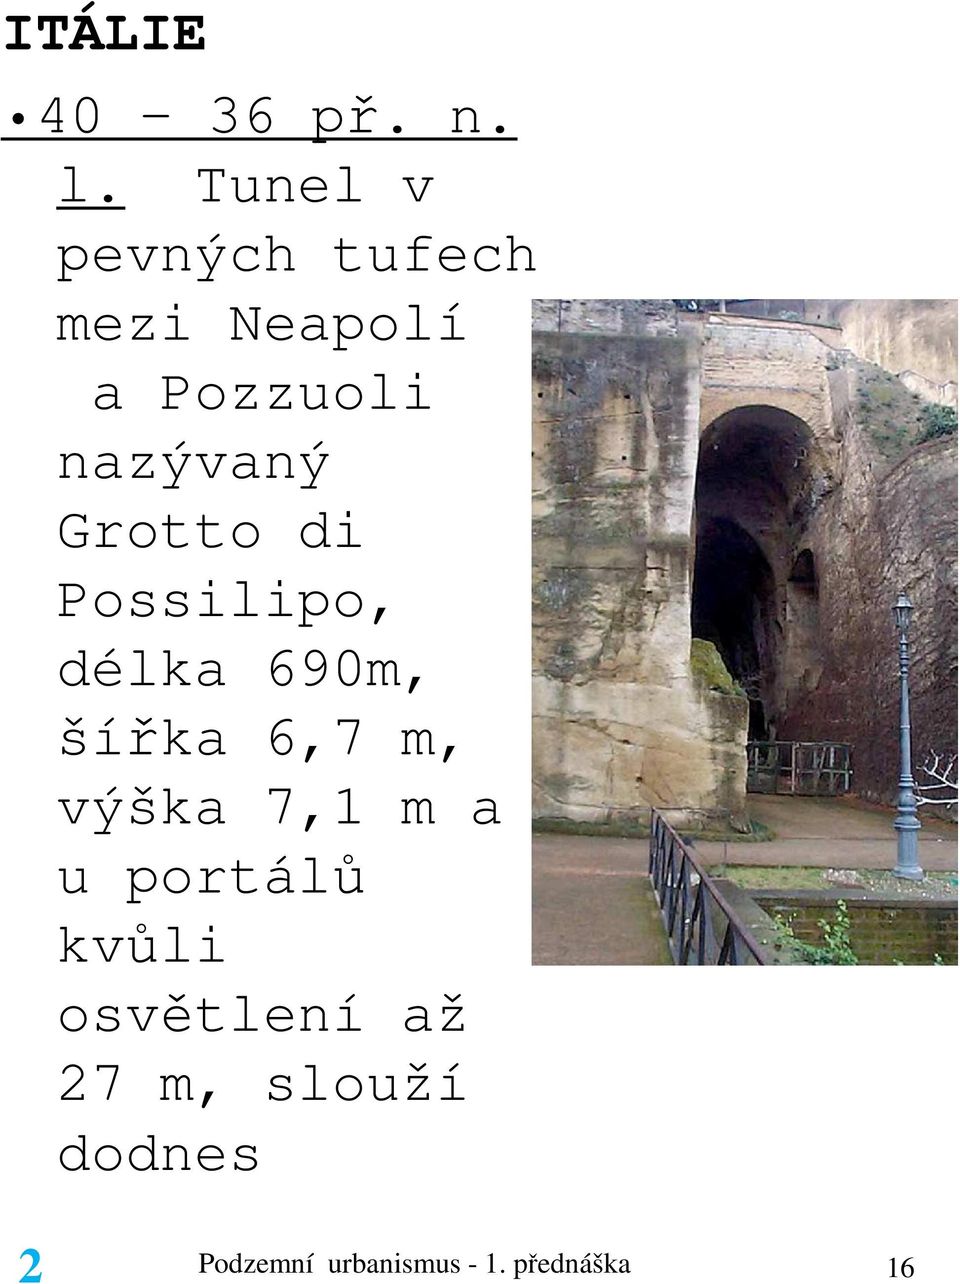 Grotto di Possilipo, délka 690m, šířka 6,7 m, výška 7,1